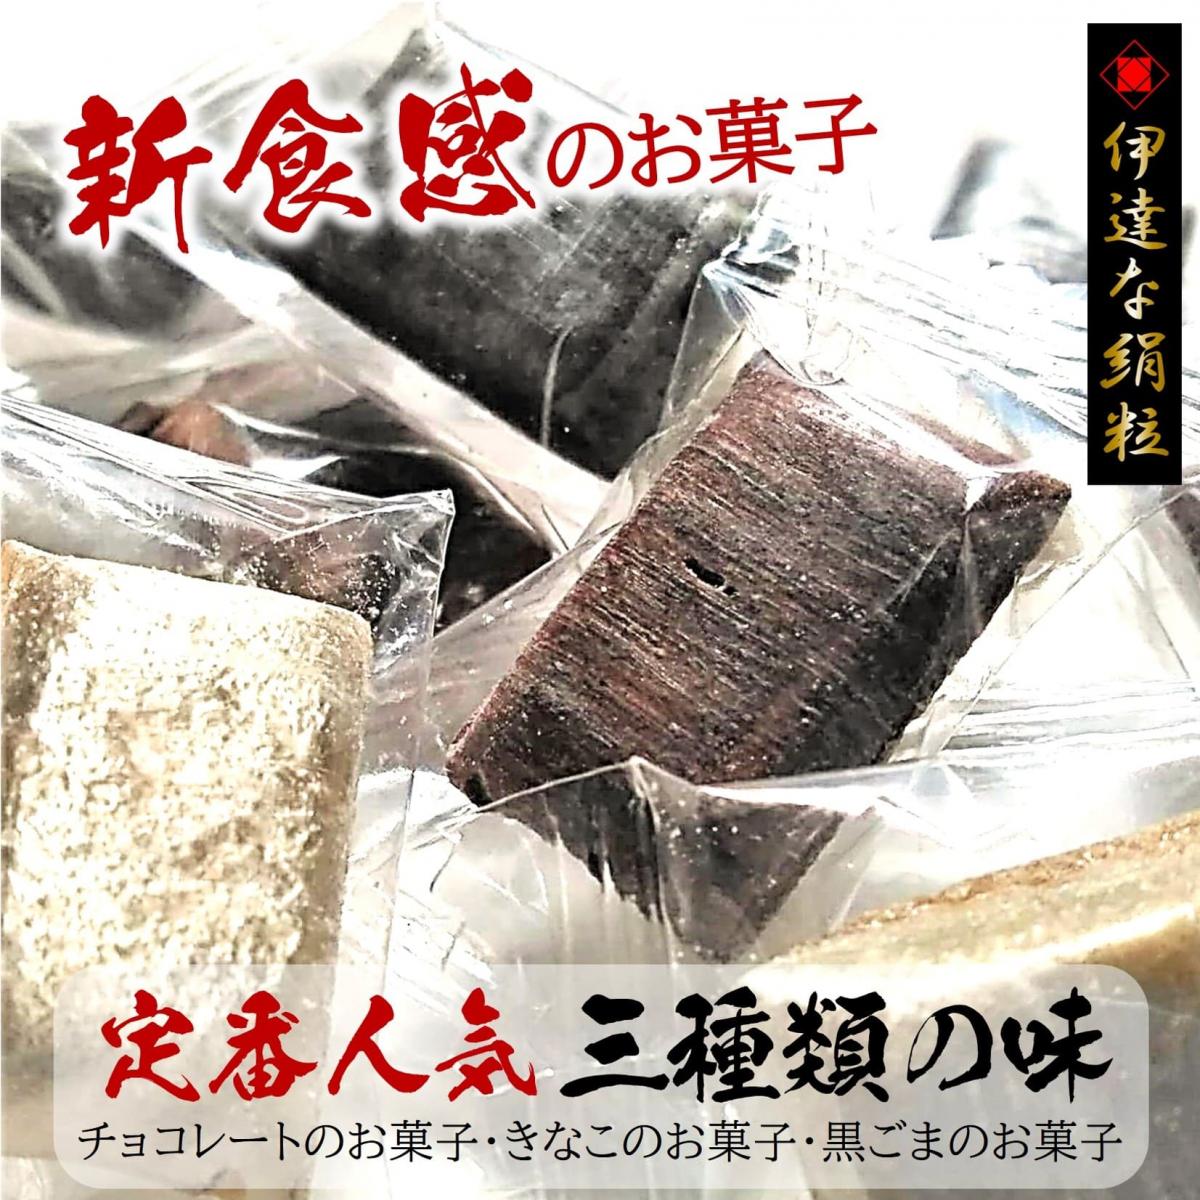 【新食感のお菓子/9袋詰め合せ】3種類の味くらべサムネイル